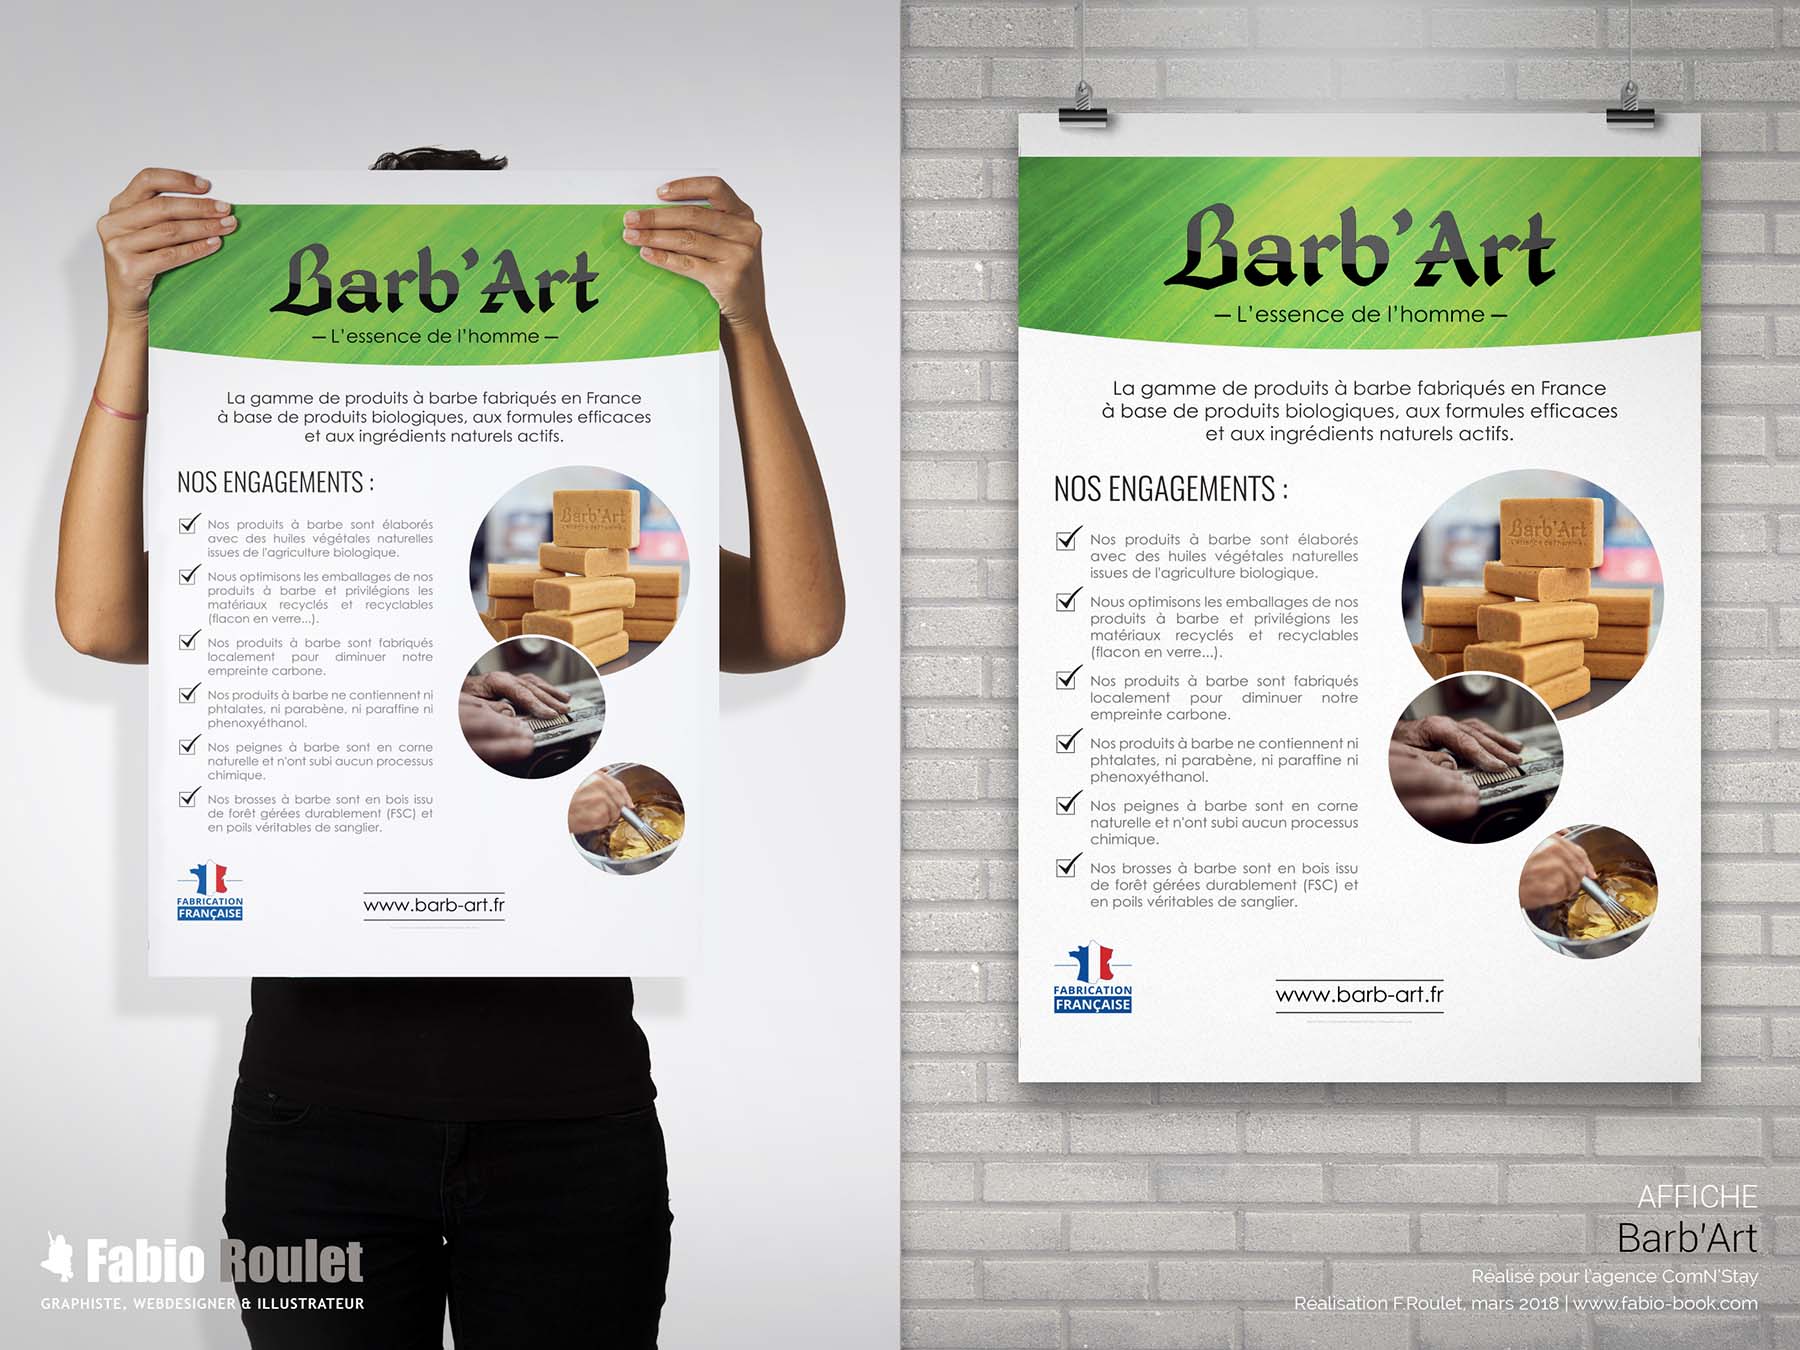 Présentation des engagements de Barb'Art sur une affiche A3